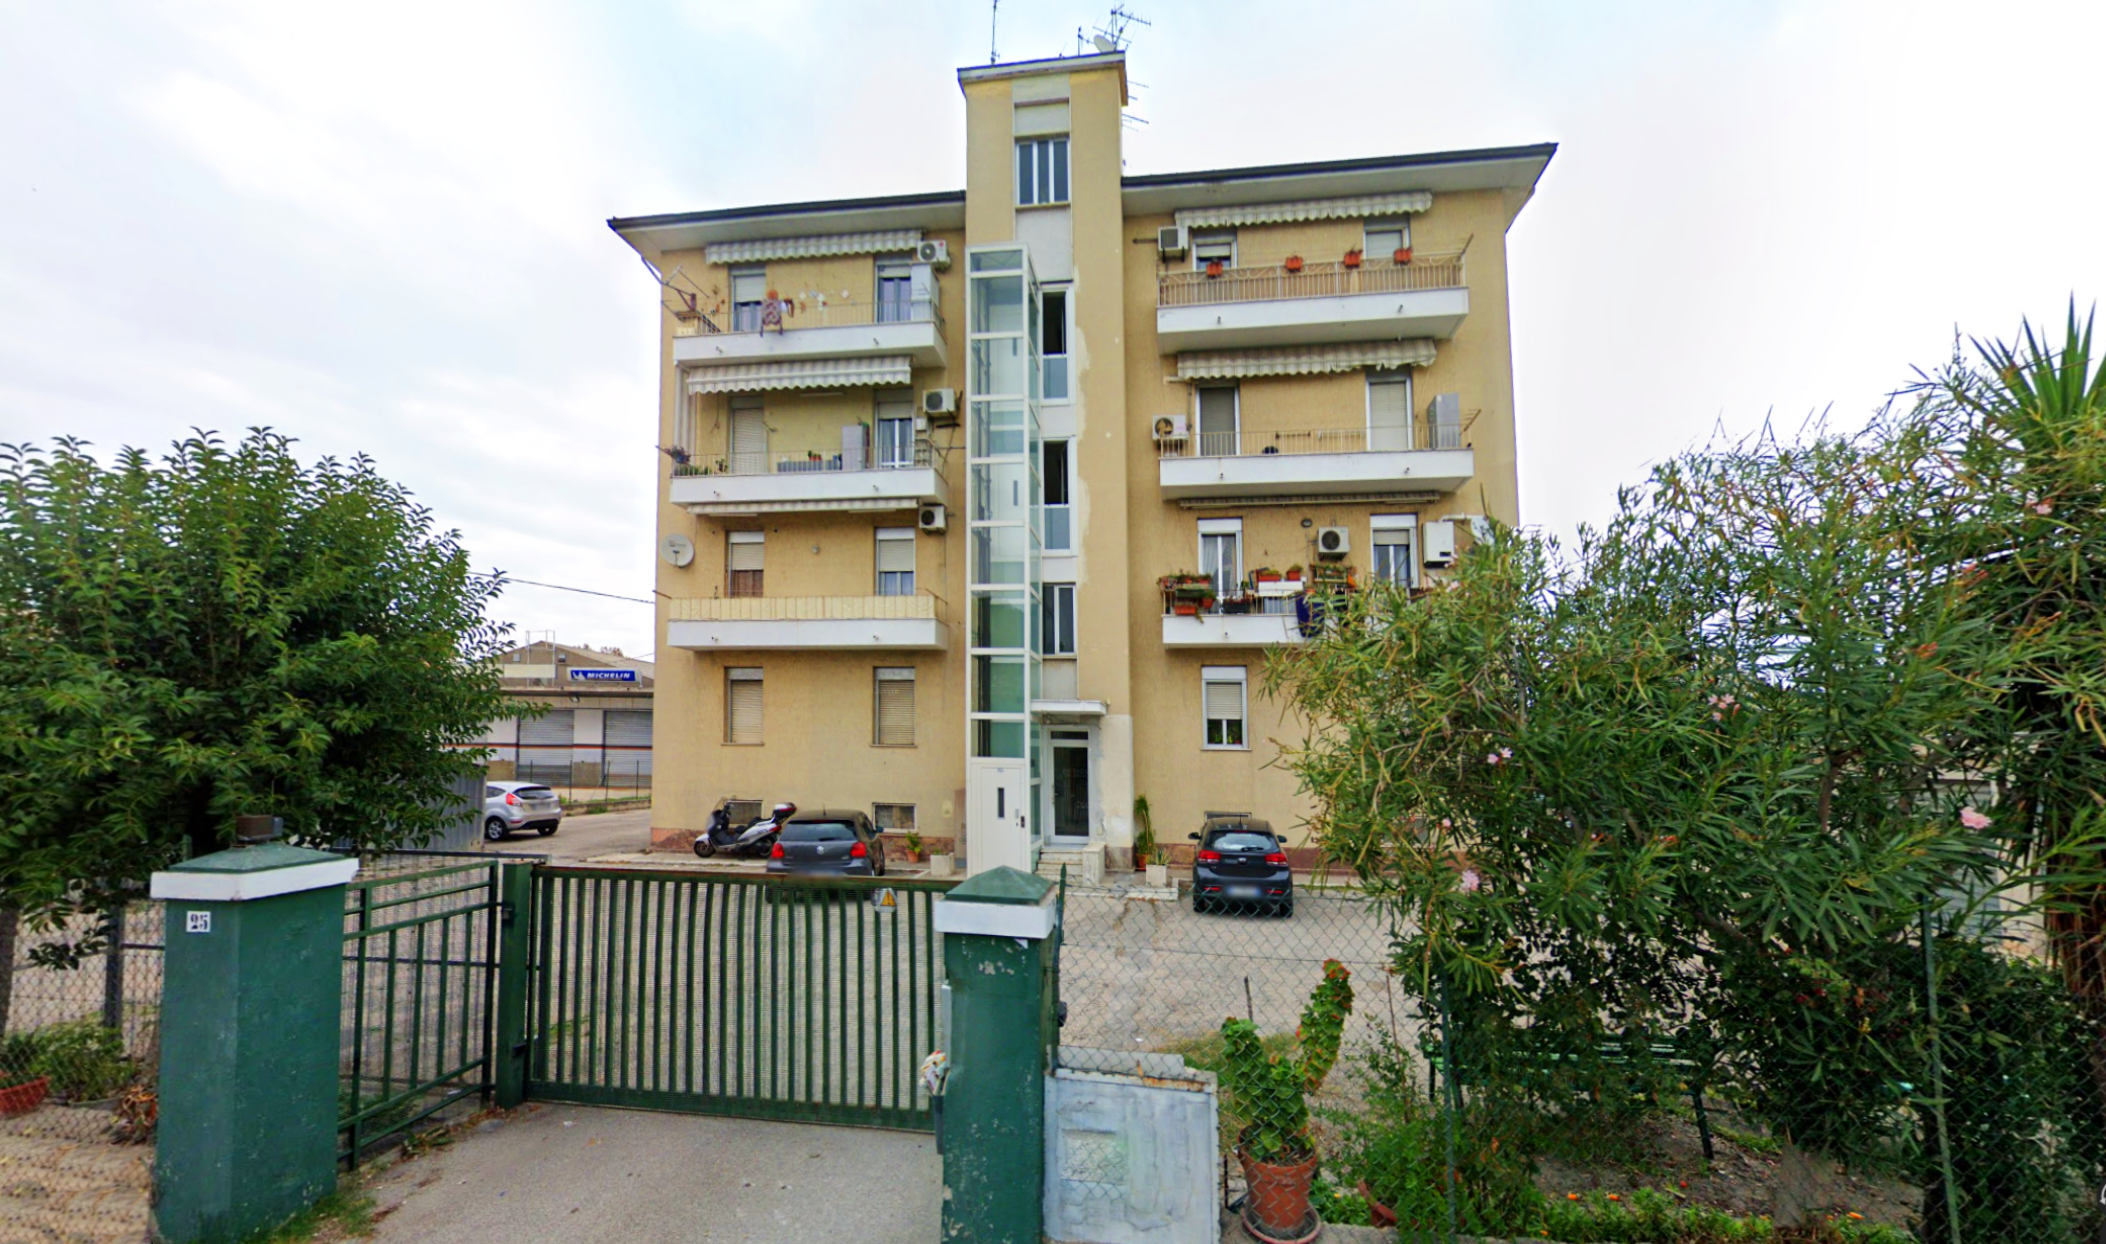 Cod. TOPRE 6032166 Grazioso appartamento a pochi minuti dal centro città in vendita a Pescara zona Tiburtina